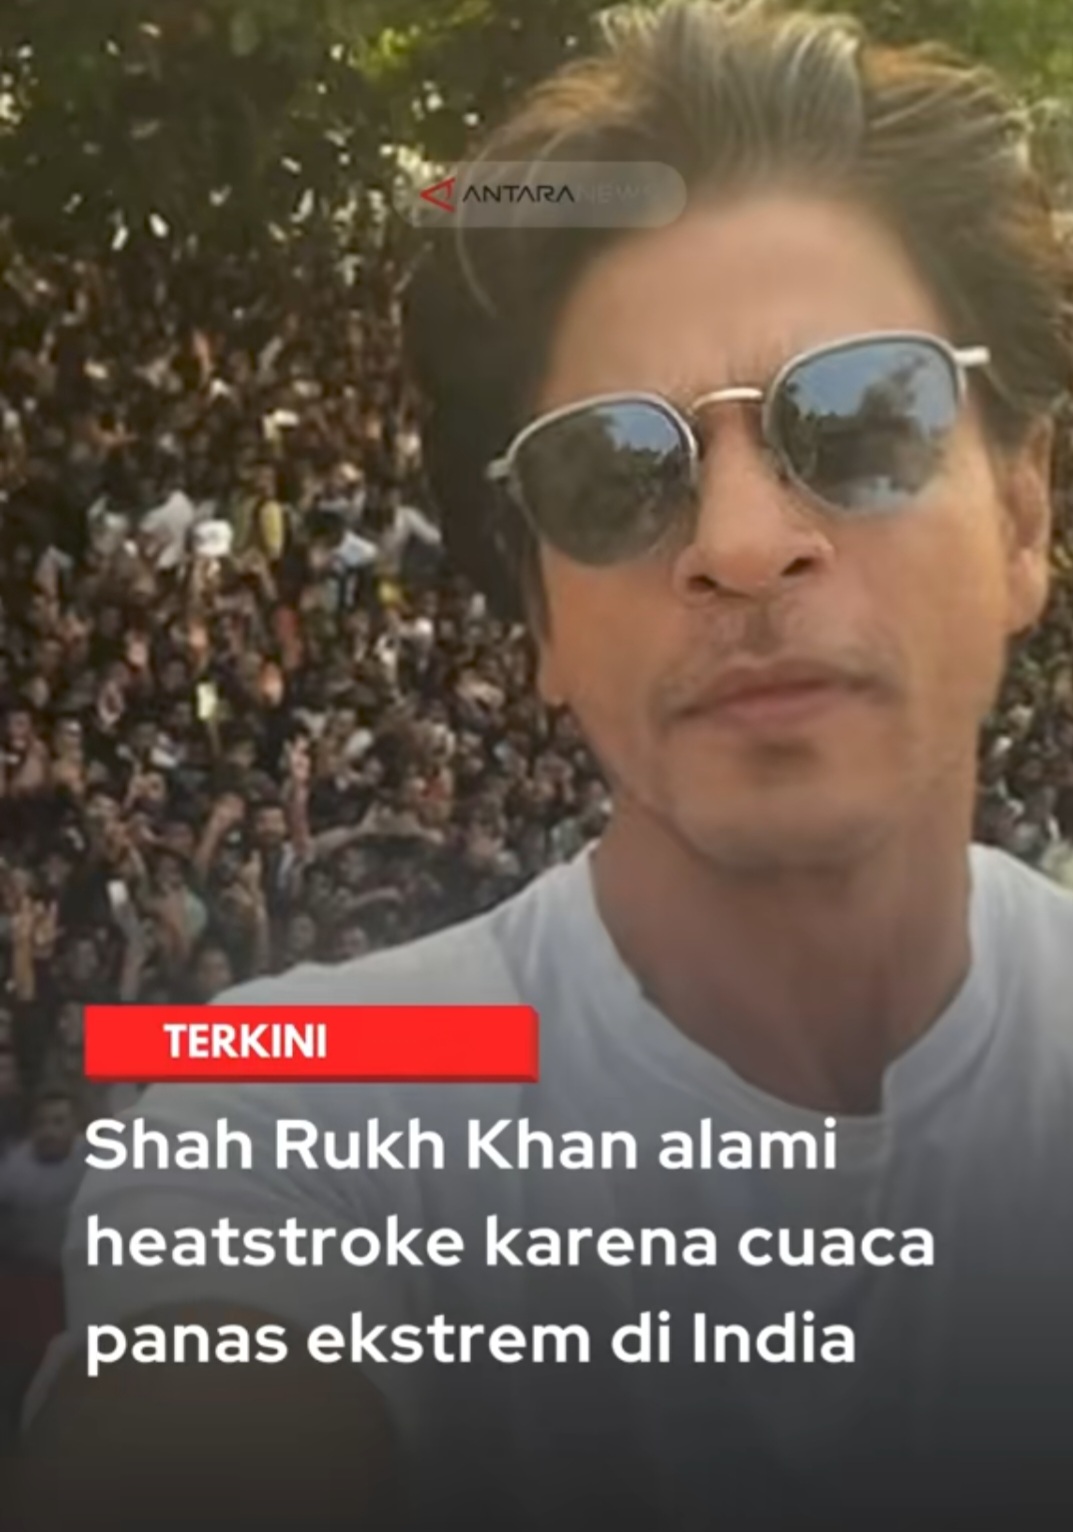 Shah Rukh Khan Dikabarkan Mengalami Heatstroke, Apa Penyebabnya?